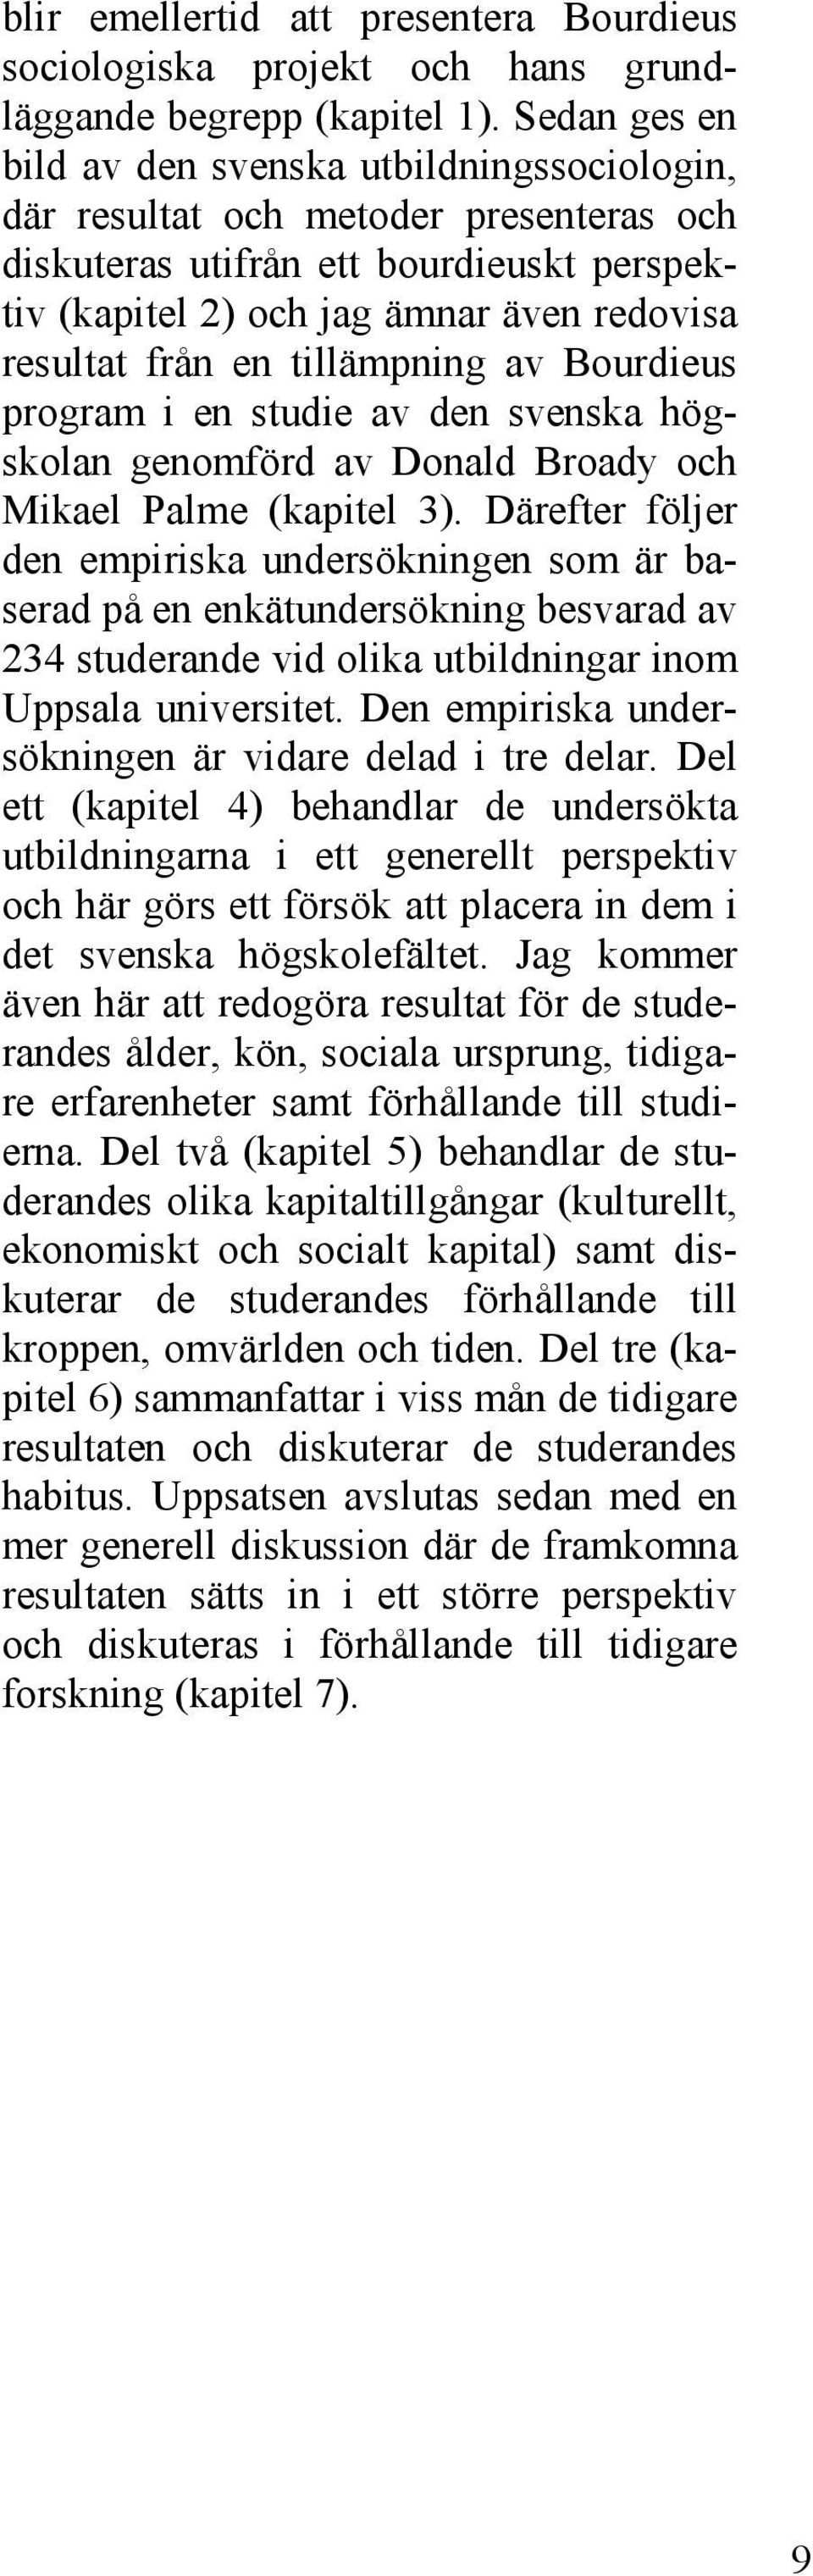 tillämpning av Bourdieus program i en studie av den svenska högskolan genomförd av Donald Broady och Mikael Palme (kapitel 3).